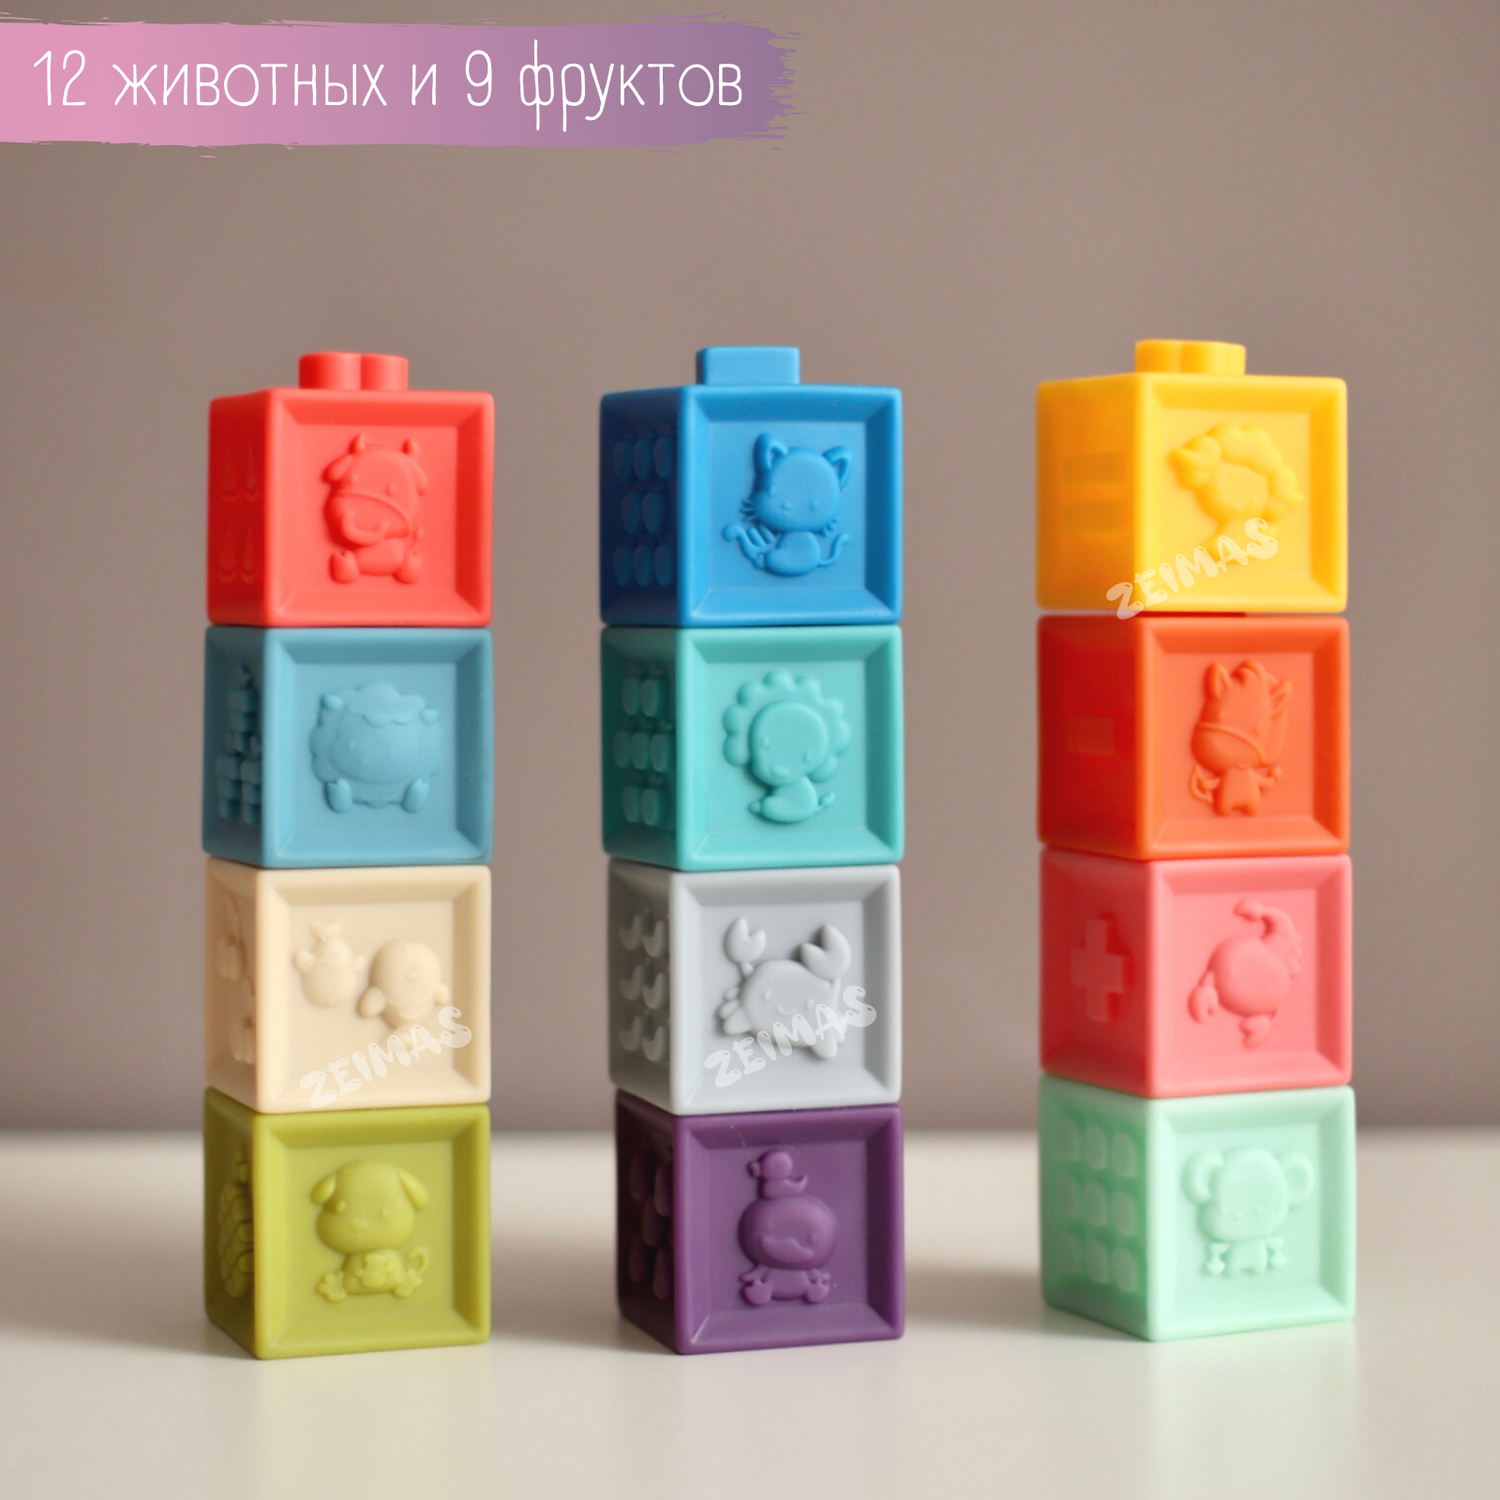 Кубики развивающие с пазами Zeimas Basic набор 12 шт мягкие тактильные игрушки пирамидка детская - фото 5